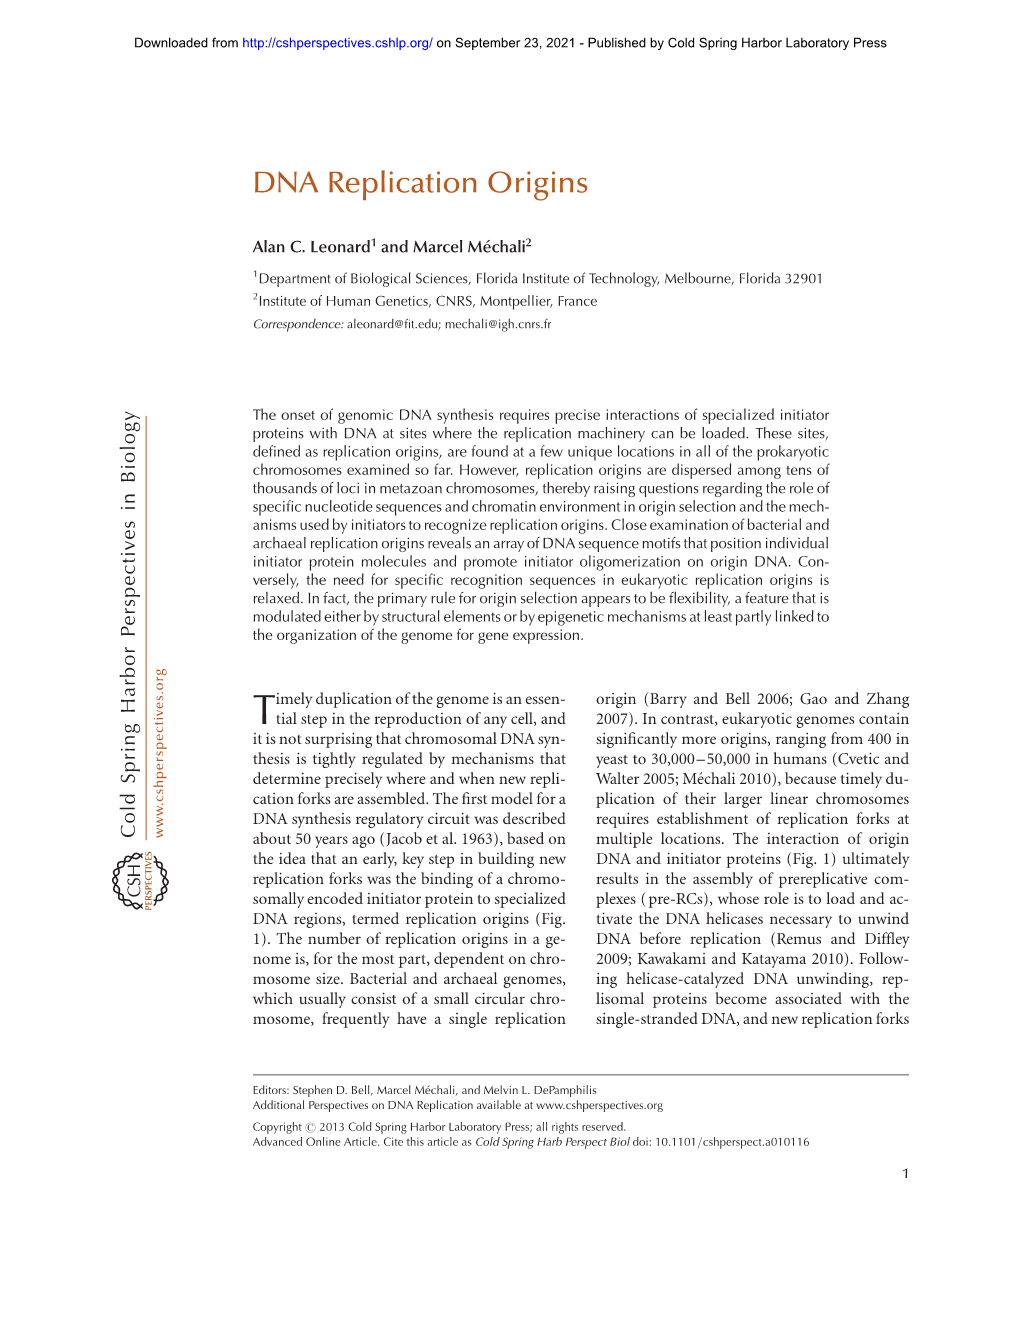 DNA Replication Origins